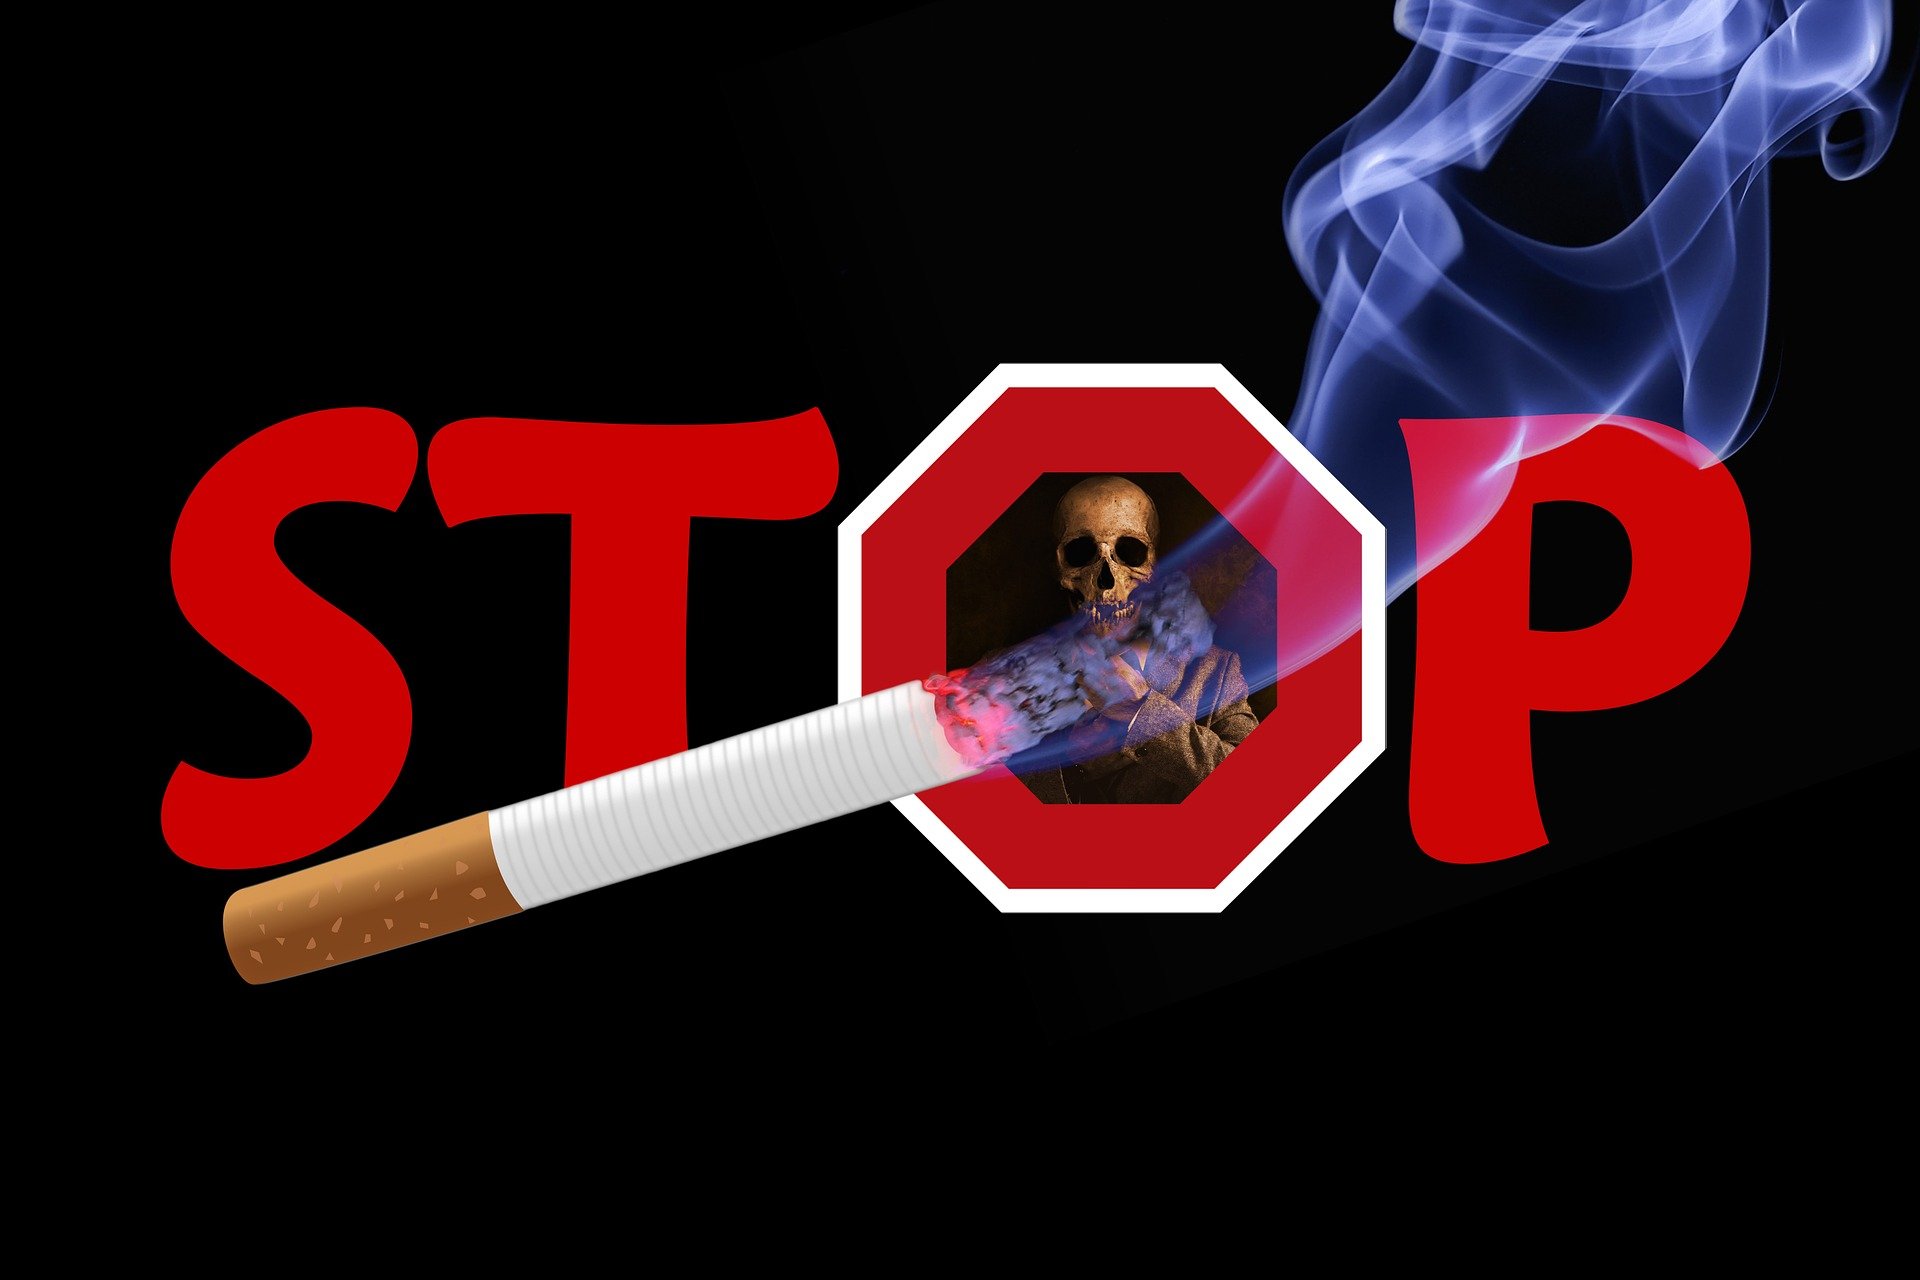 Conseil et astuces pour arrêter de fumer